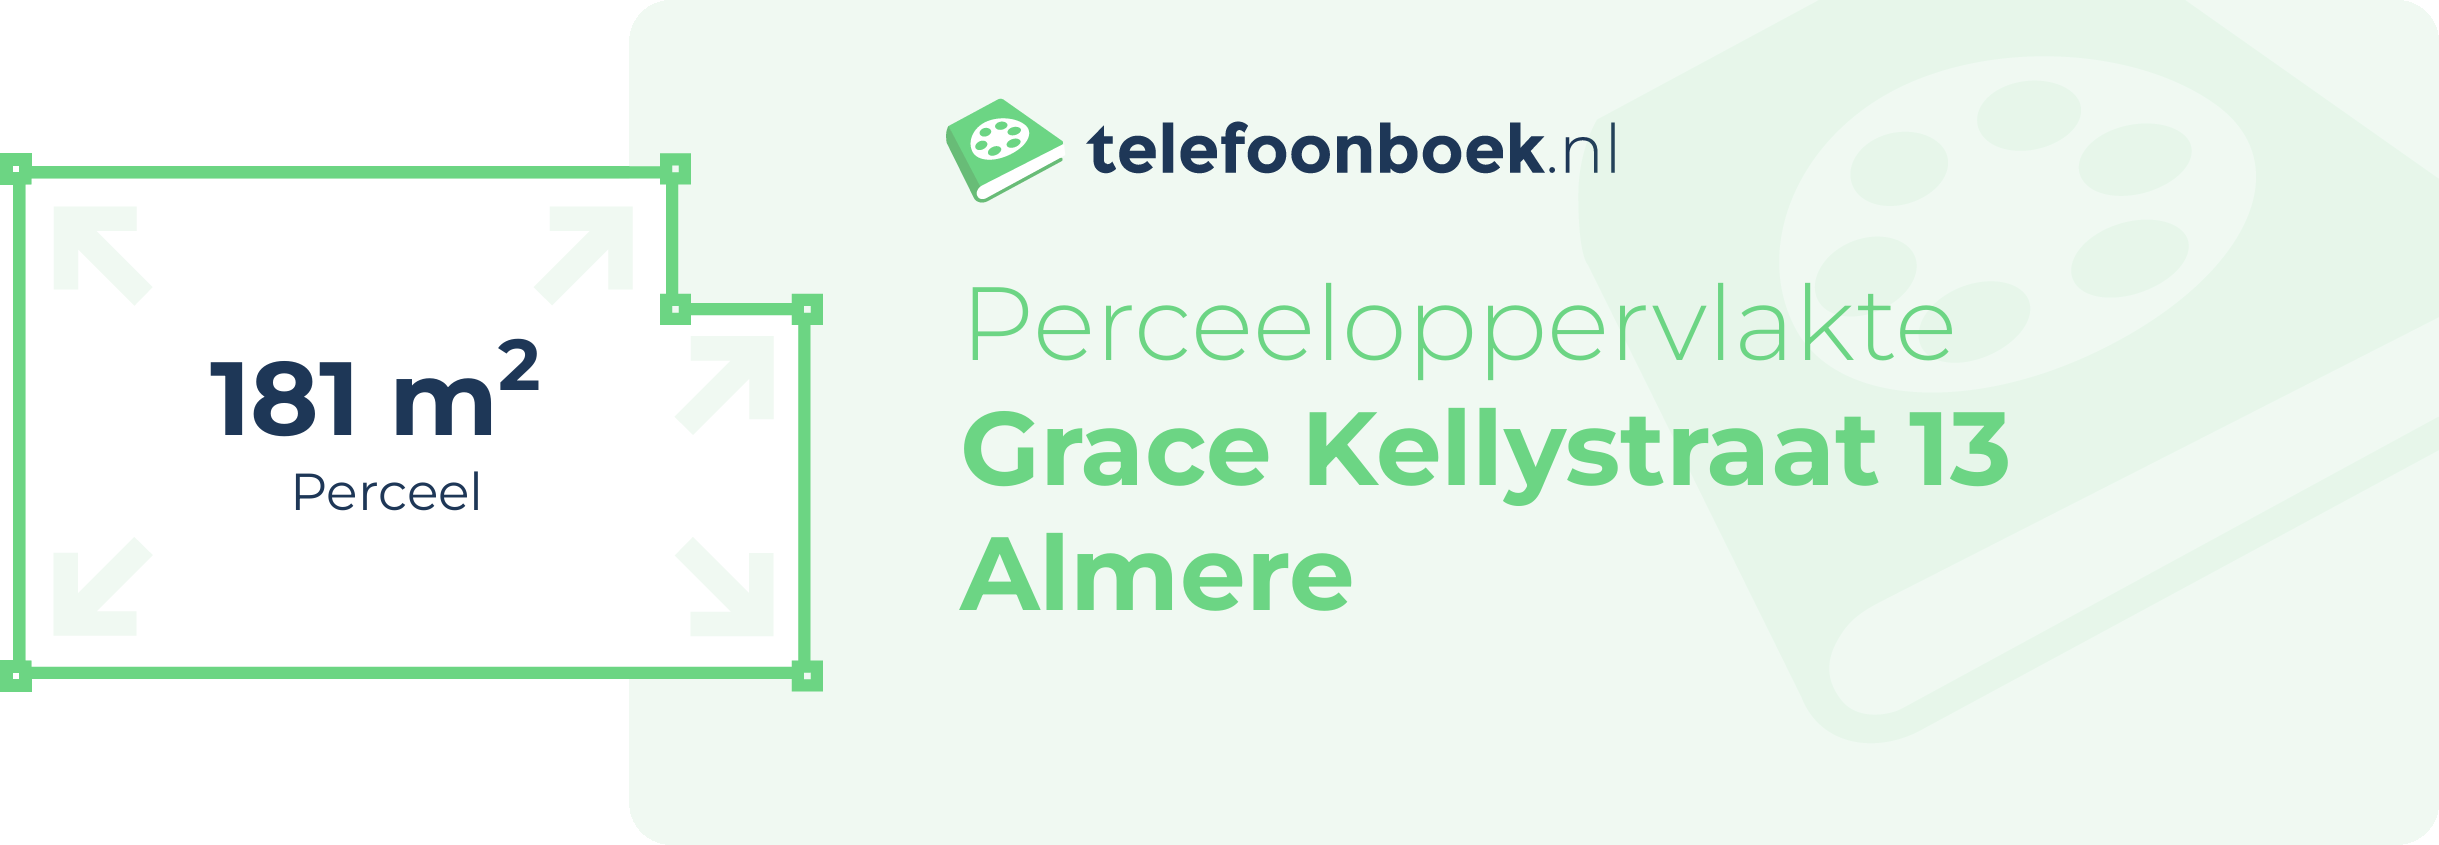 Perceeloppervlakte Grace Kellystraat 13 Almere